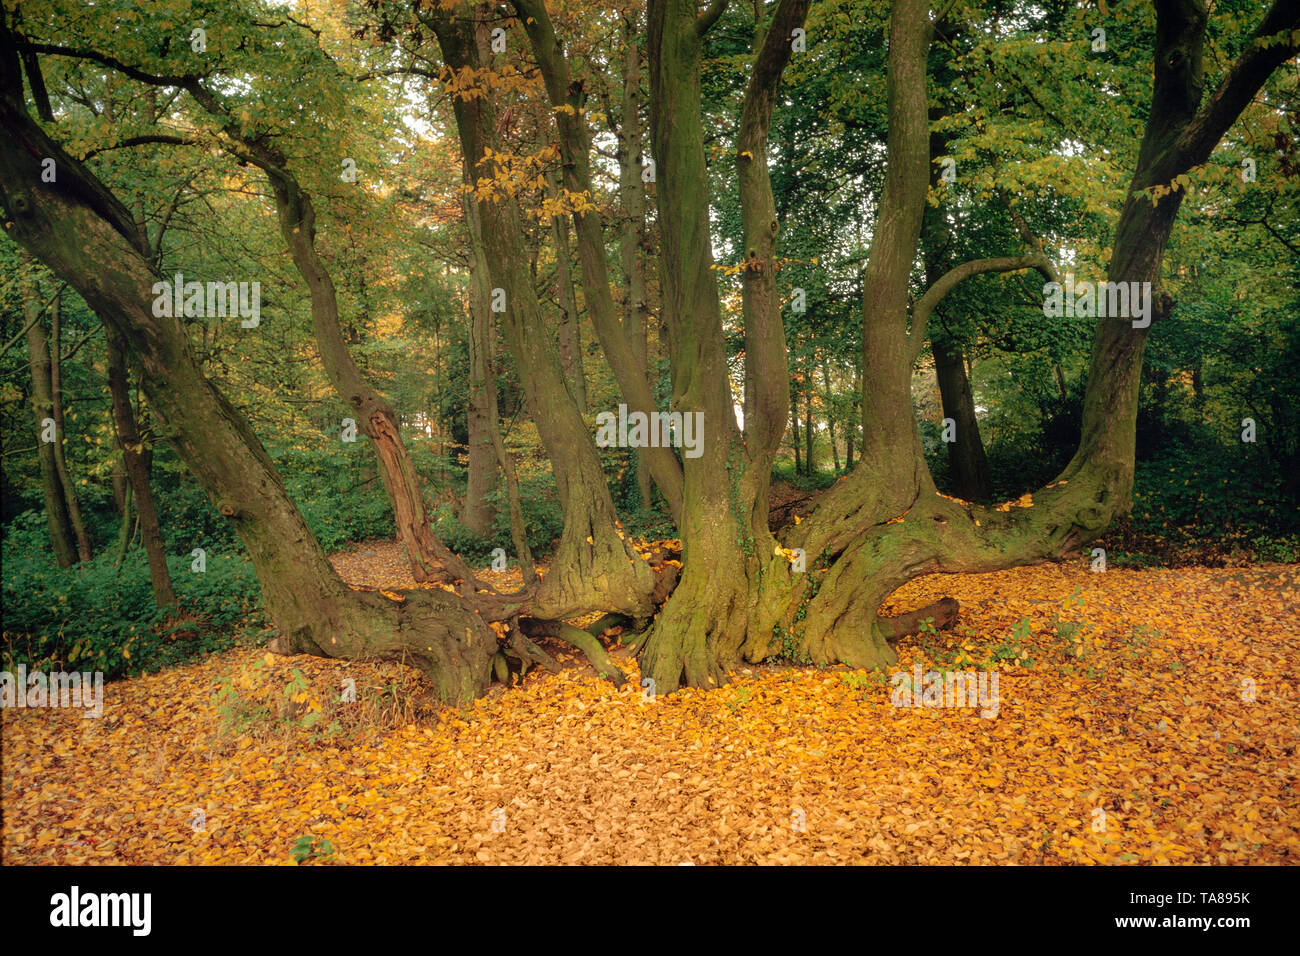 La diffusion de tronc d'arbre mature & branches, forêt d'automne plancher couvert dans les feuilles mortes Banque D'Images